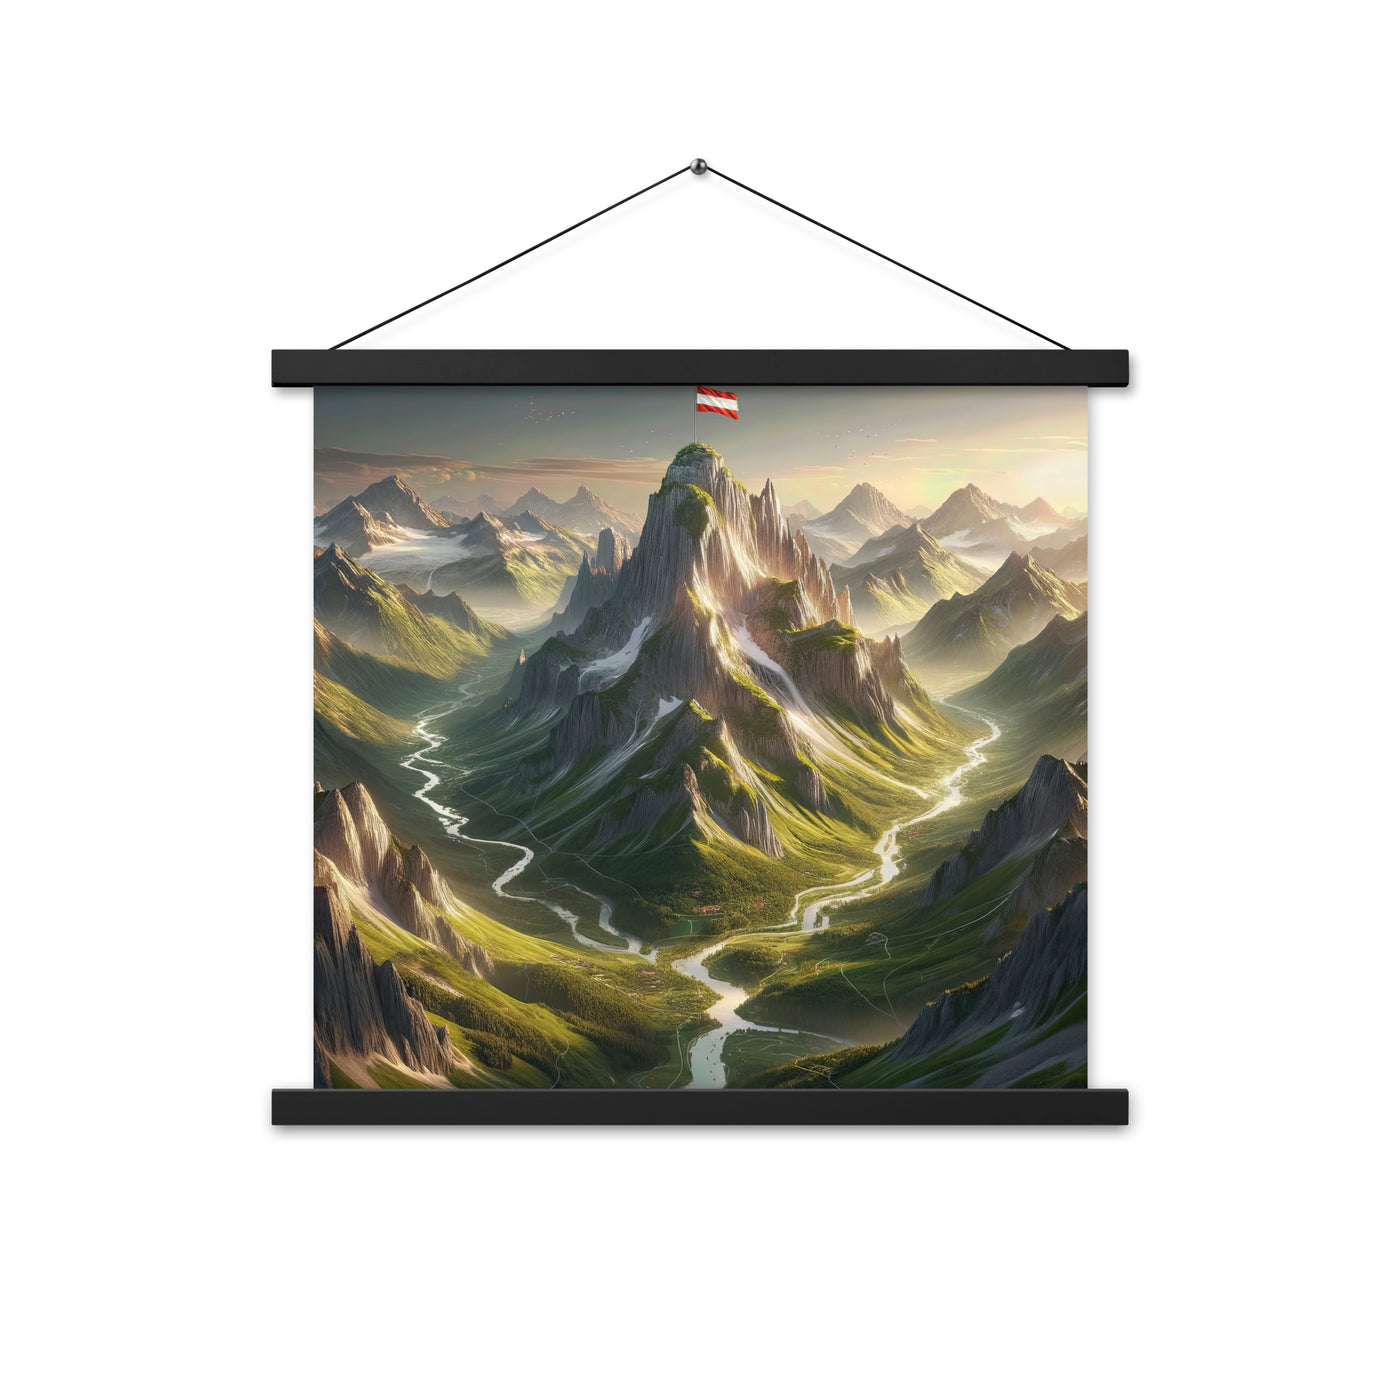 Fotorealistisches Bild der Alpen mit österreichischer Flagge, scharfen Gipfeln und grünen Tälern - Enhanced Matte Paper Poster With berge xxx yyy zzz 45.7 x 45.7 cm